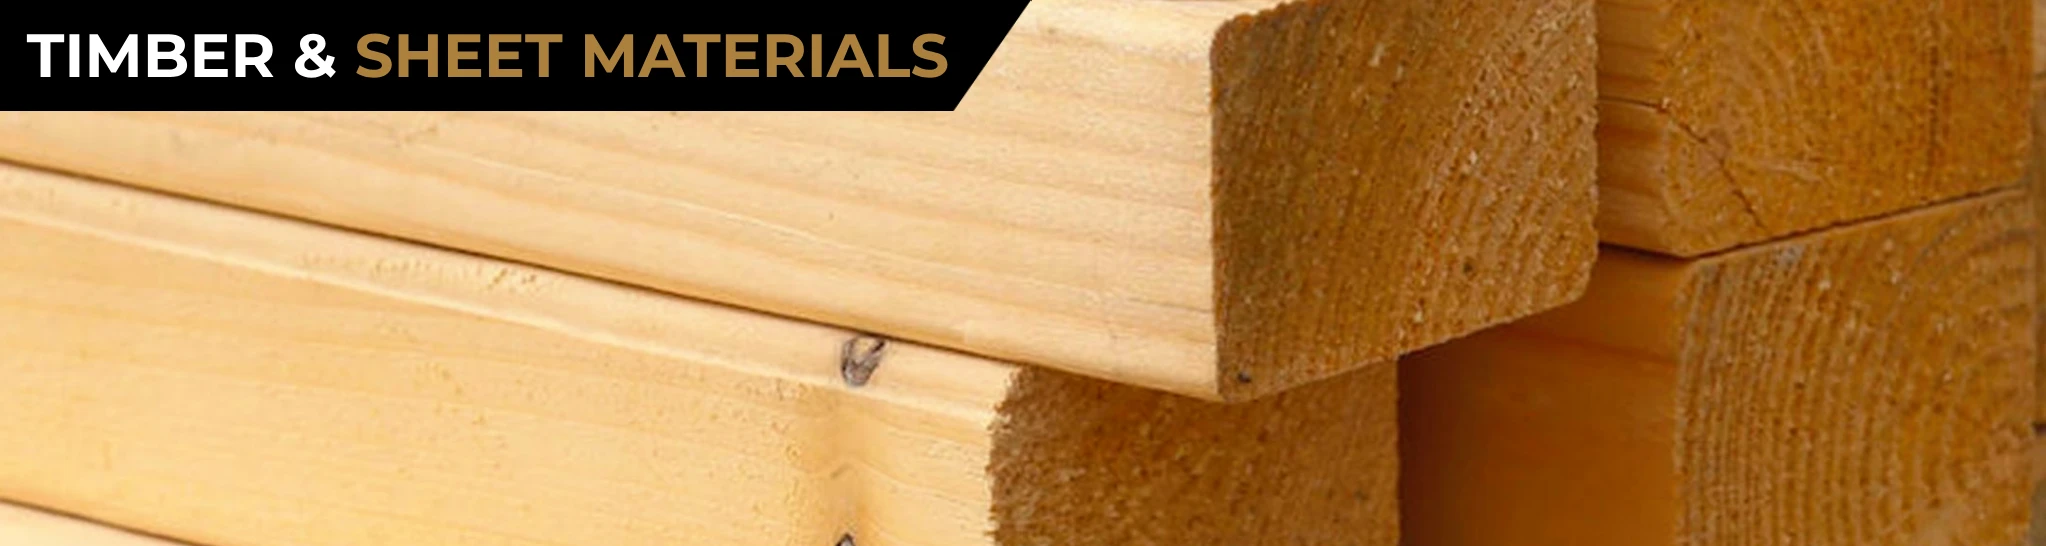 Timber and sheet materials header